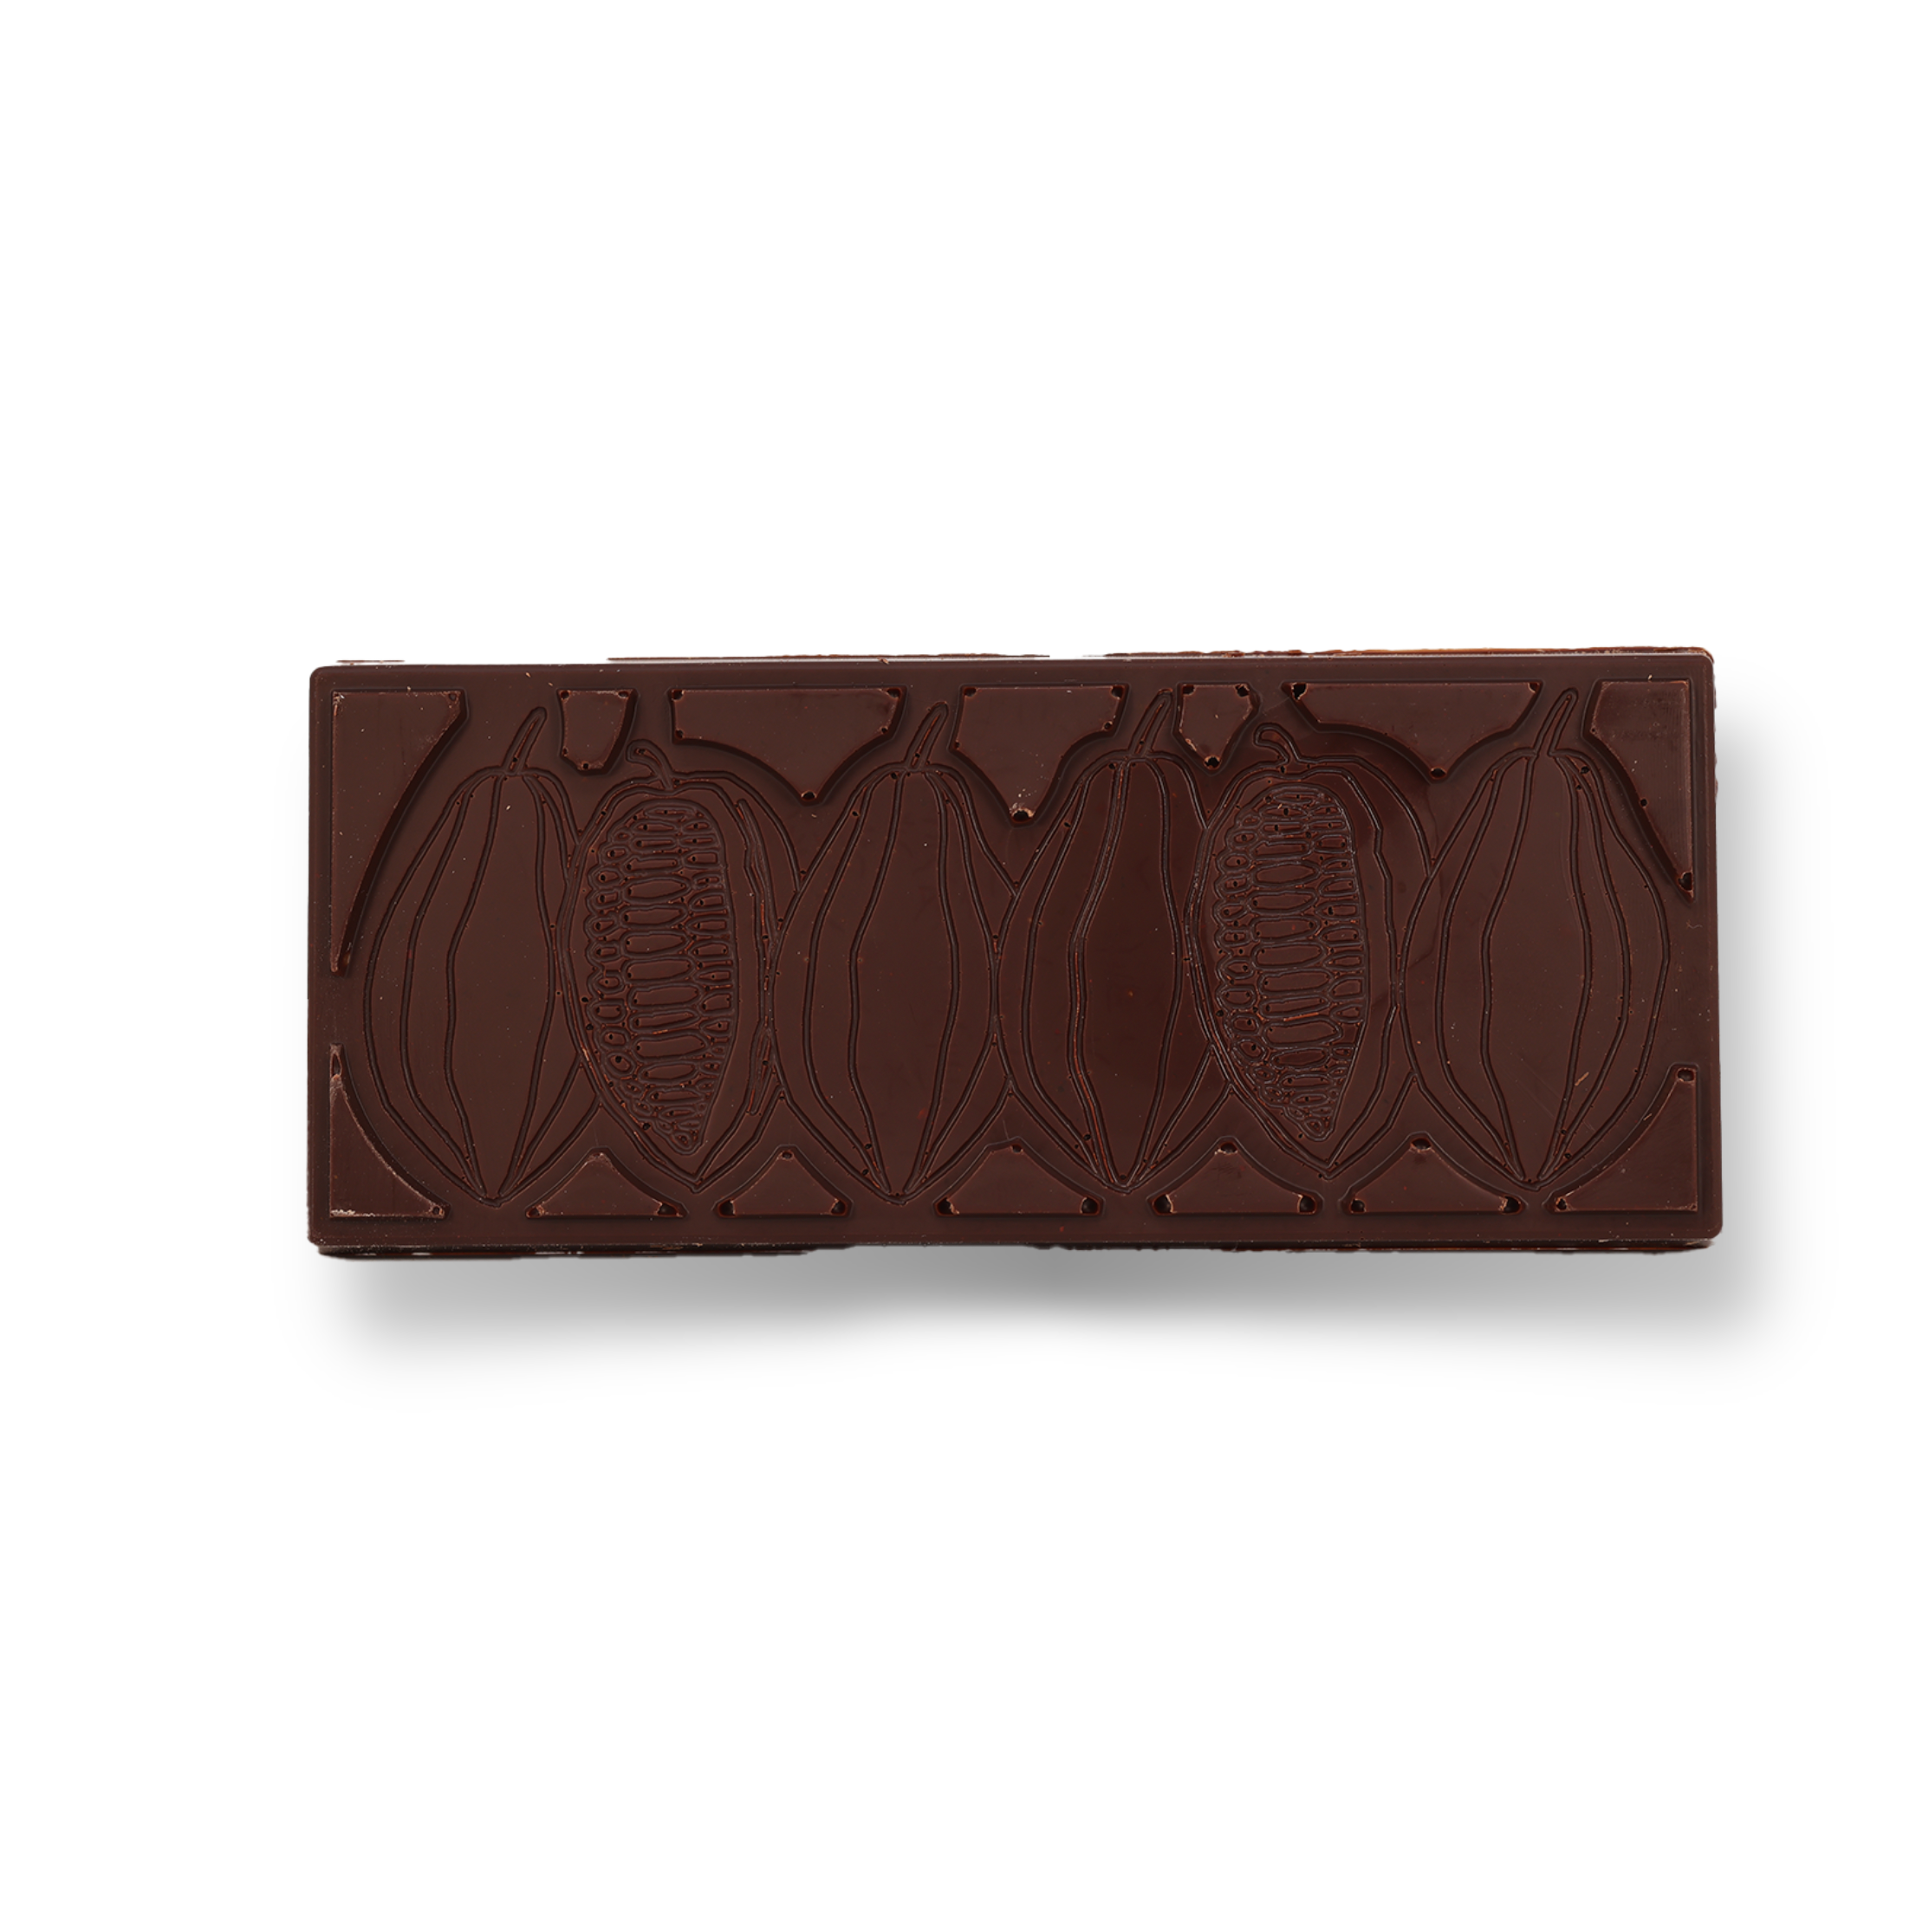 Alsterblick lütt – Edelbitterschokolade, 50g